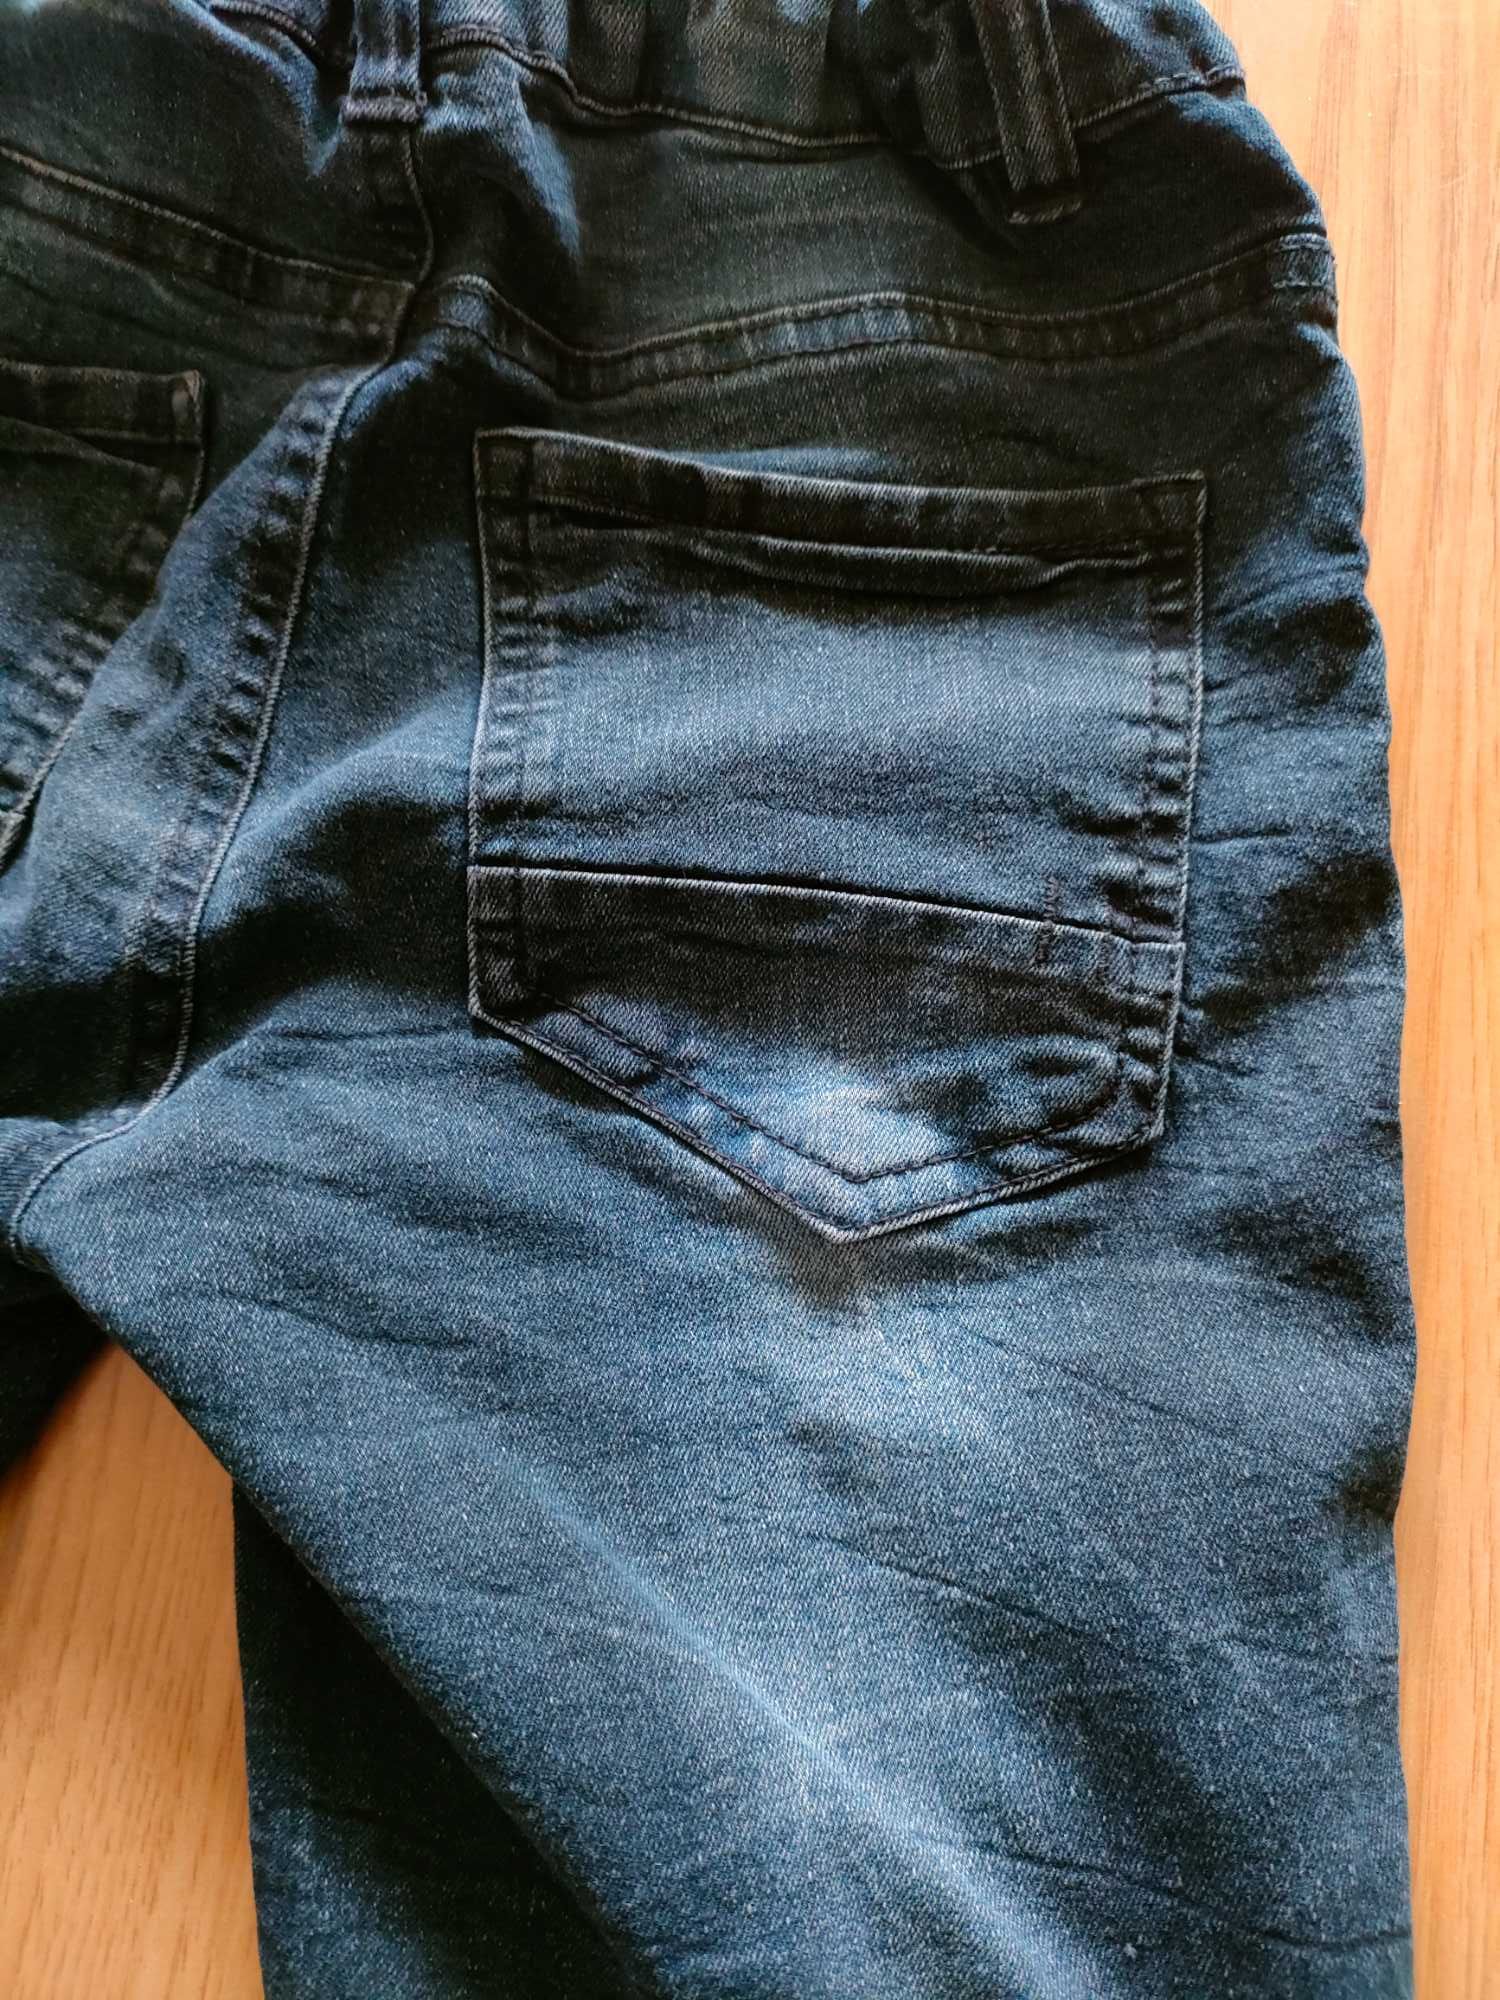 Spodnie jeansy chłopięce r. 146